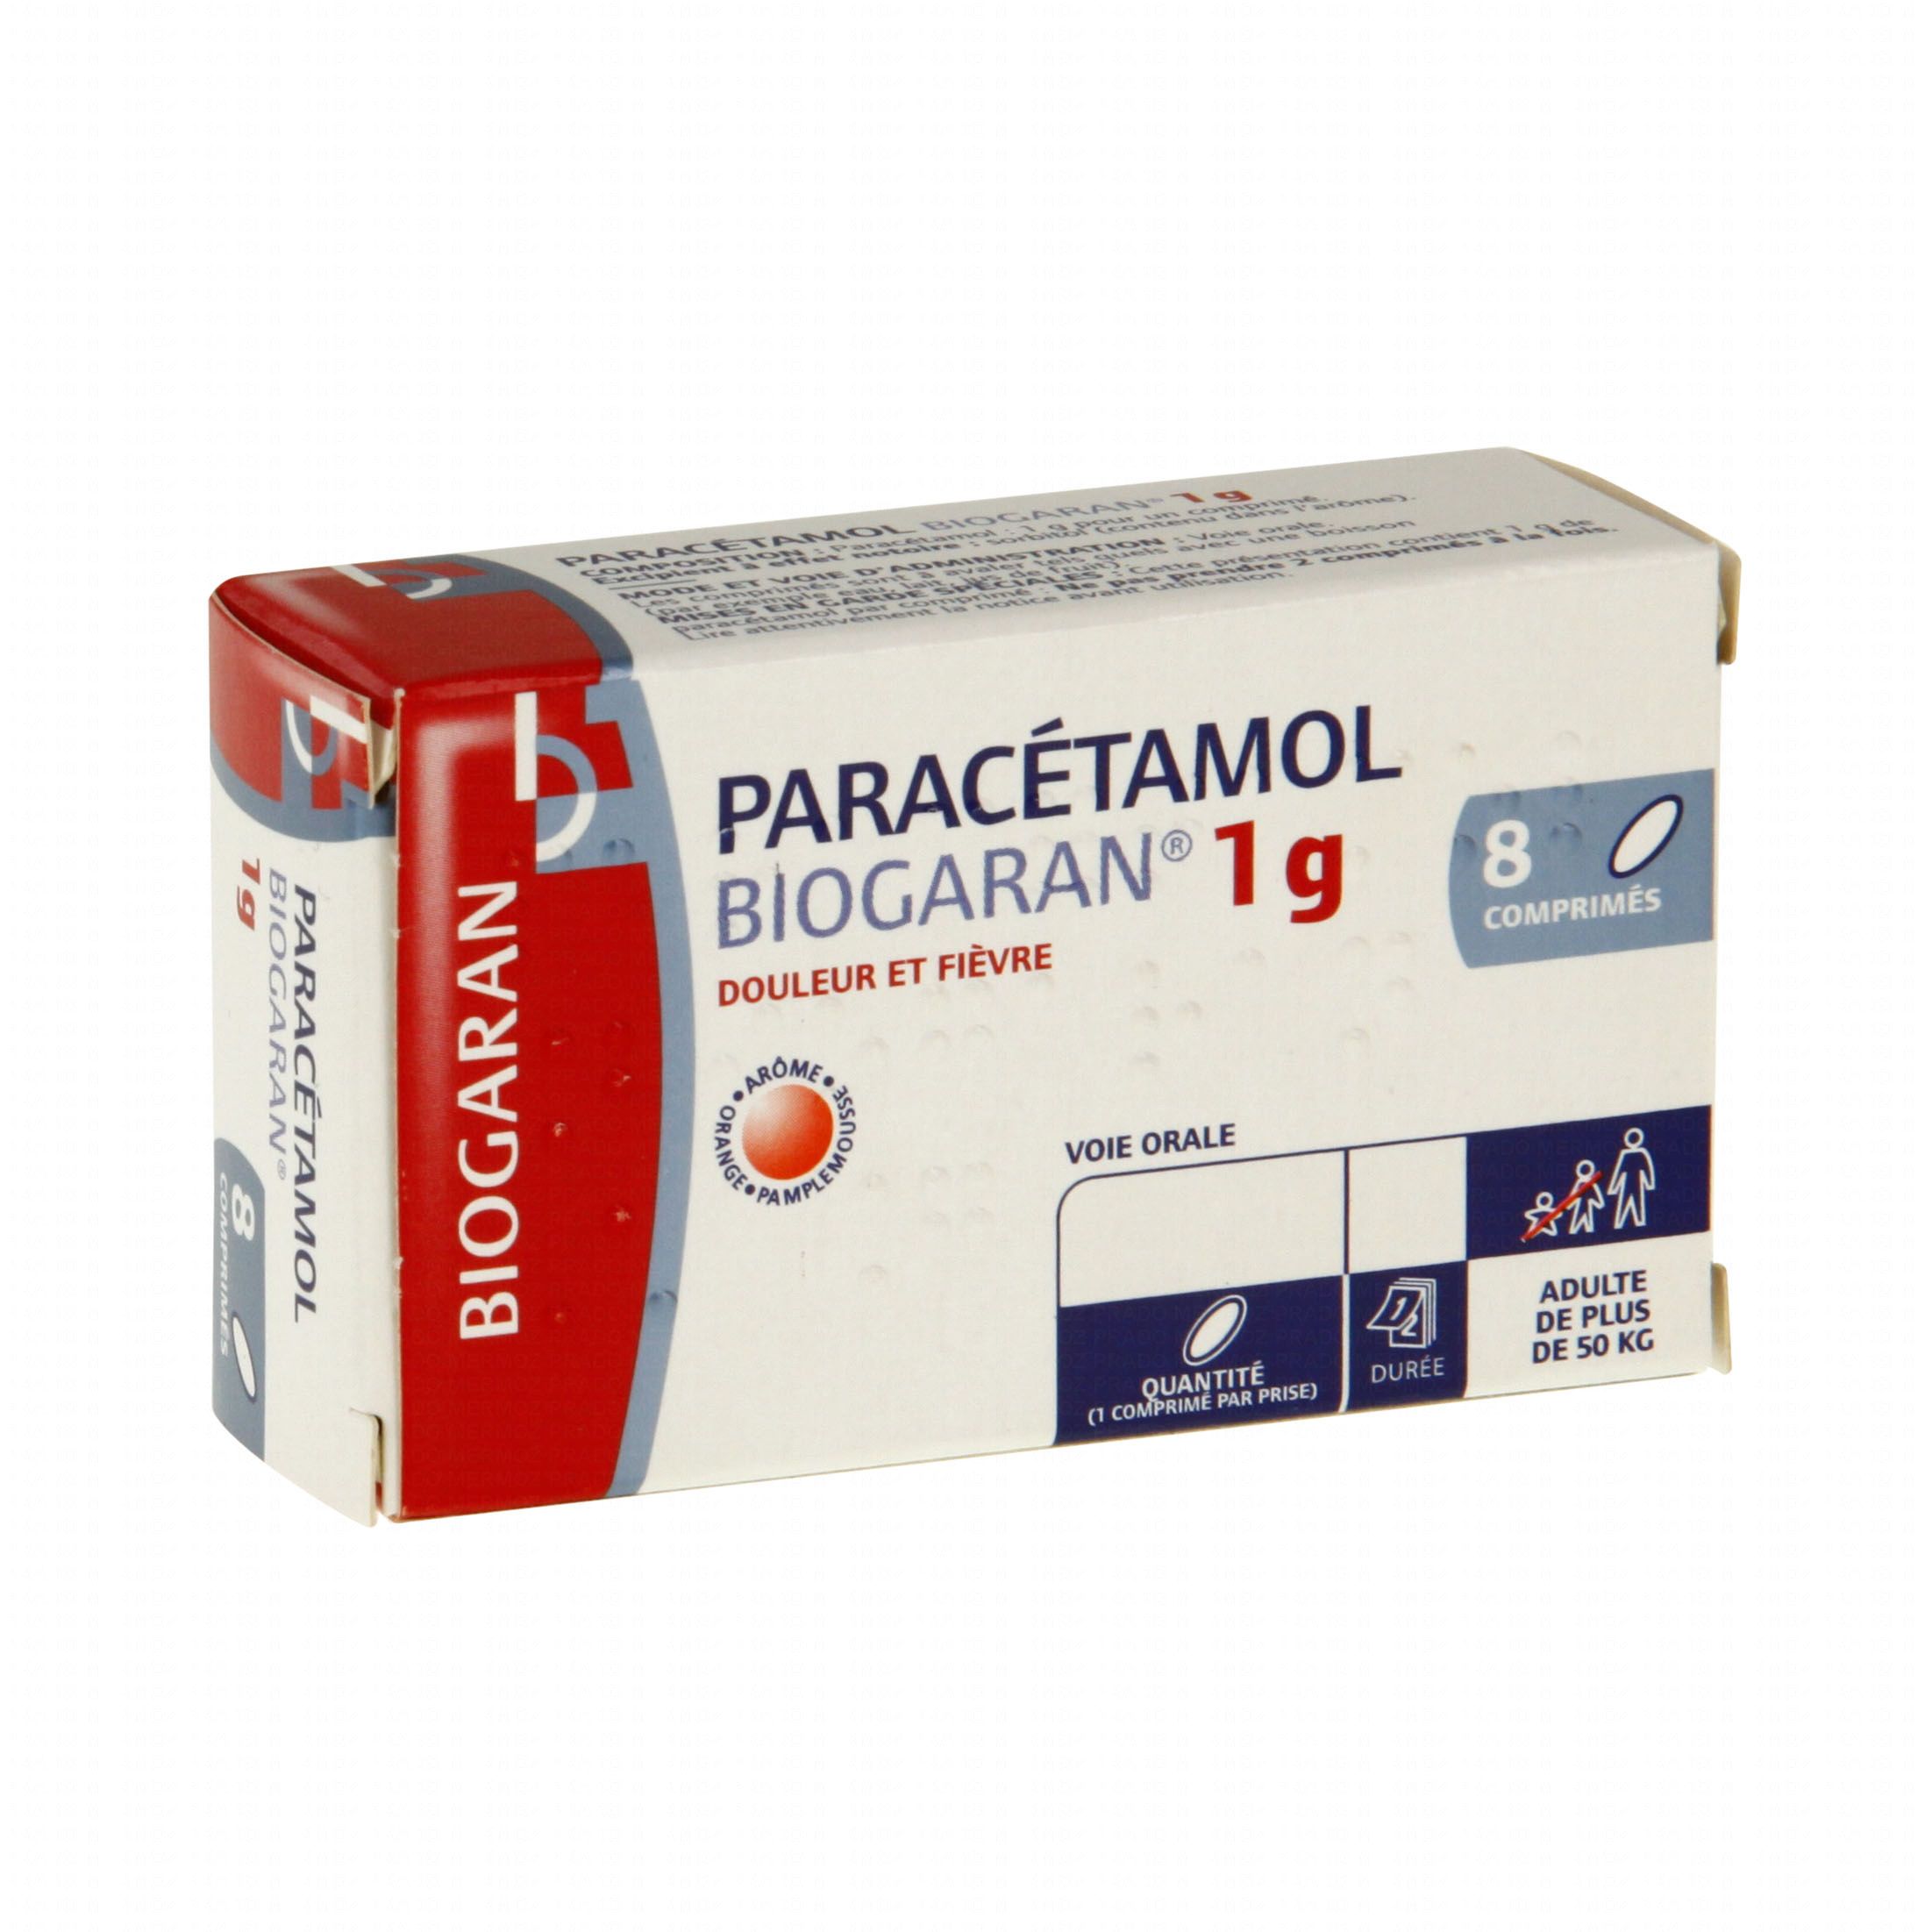 1g paracetamol 400mg ibuprofen